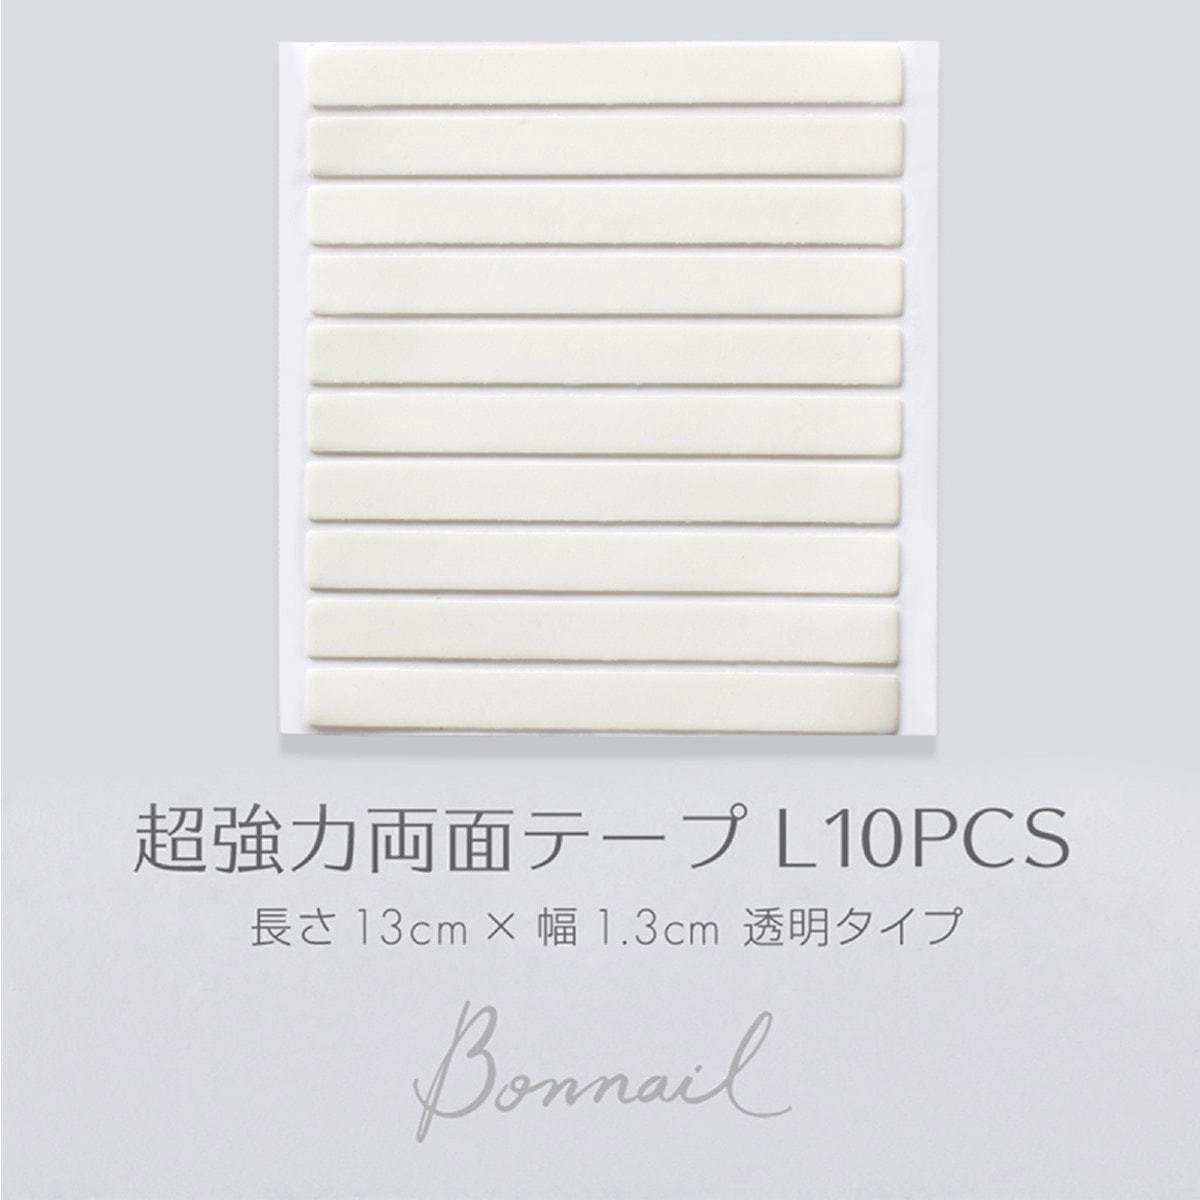 Bonnail 超強力両面テープ 10pcs